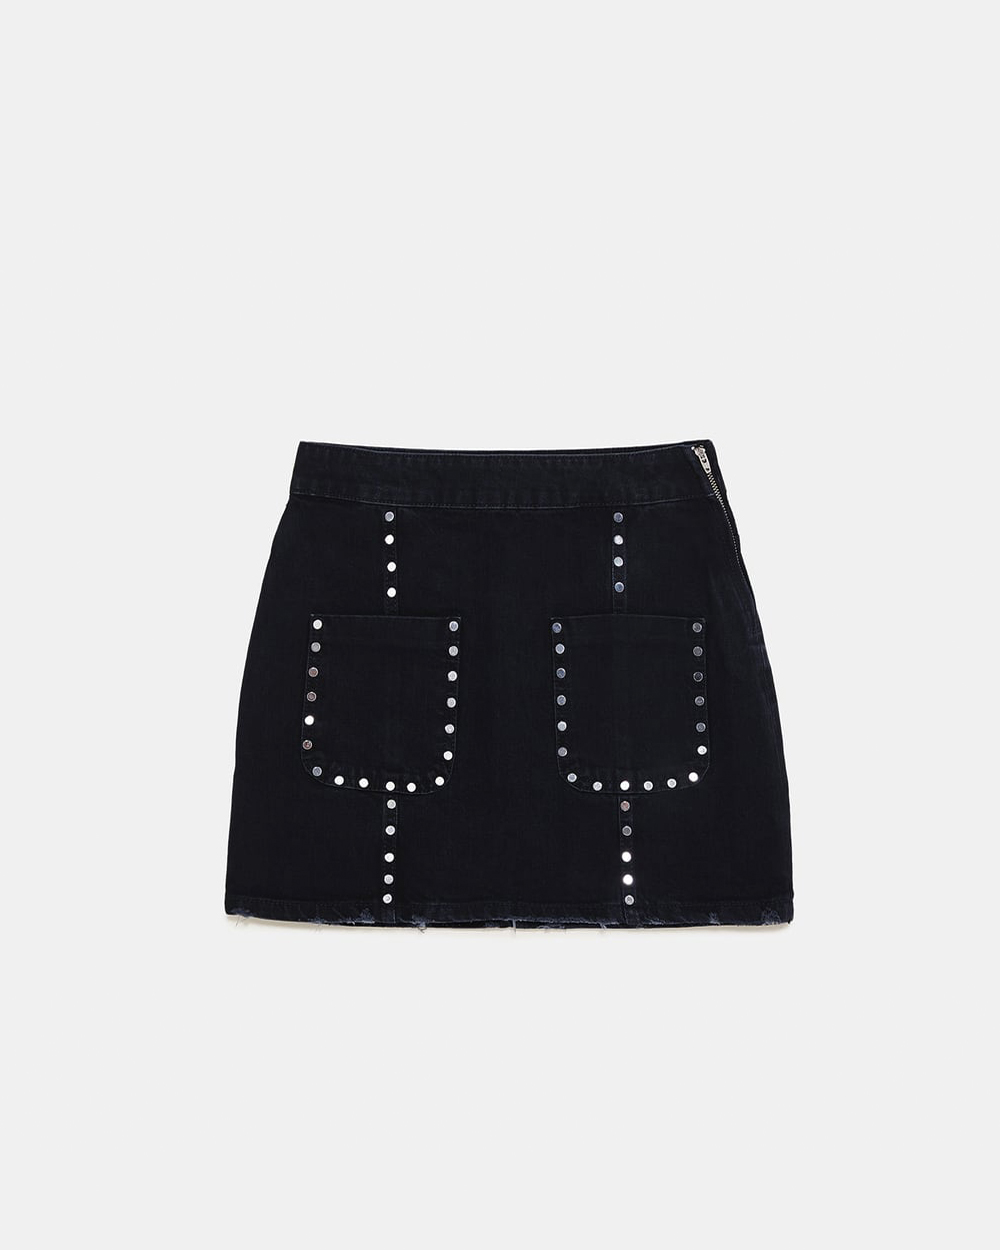 Mini skirt, $50 from Zara